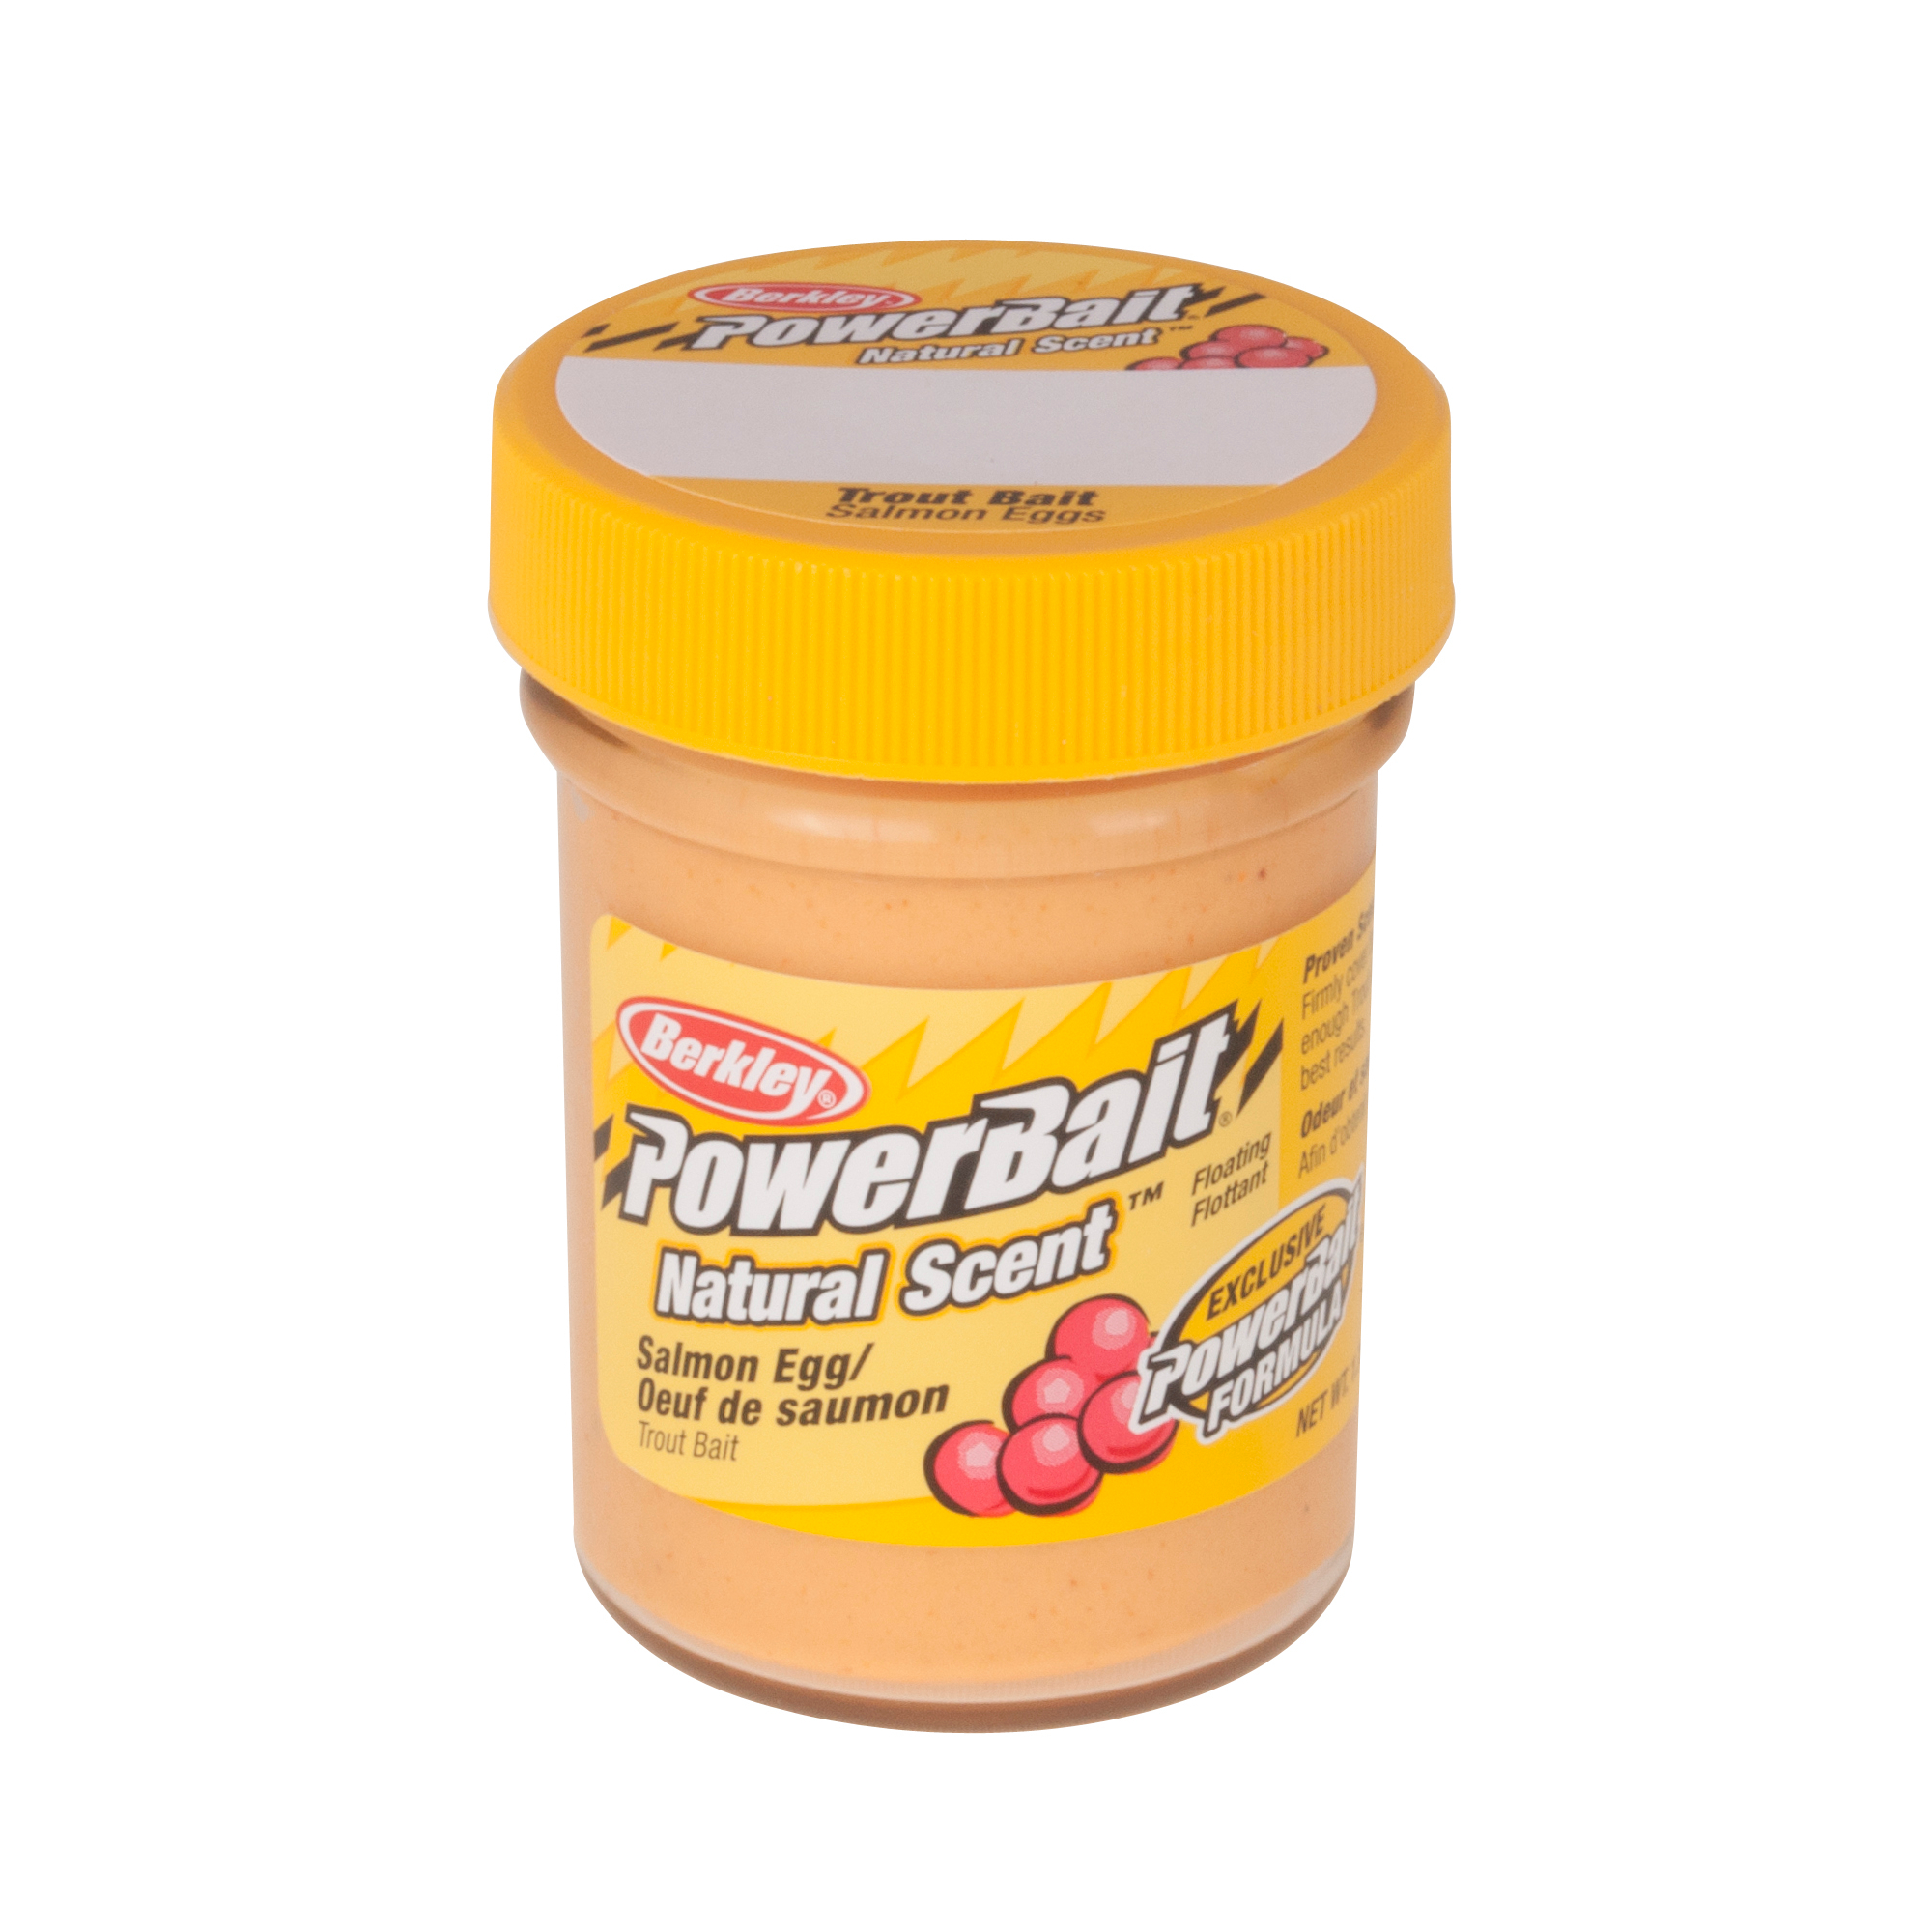 Berkley PowerBait Natural Scent Trout Bait - Salmon Peach (1.8 oz